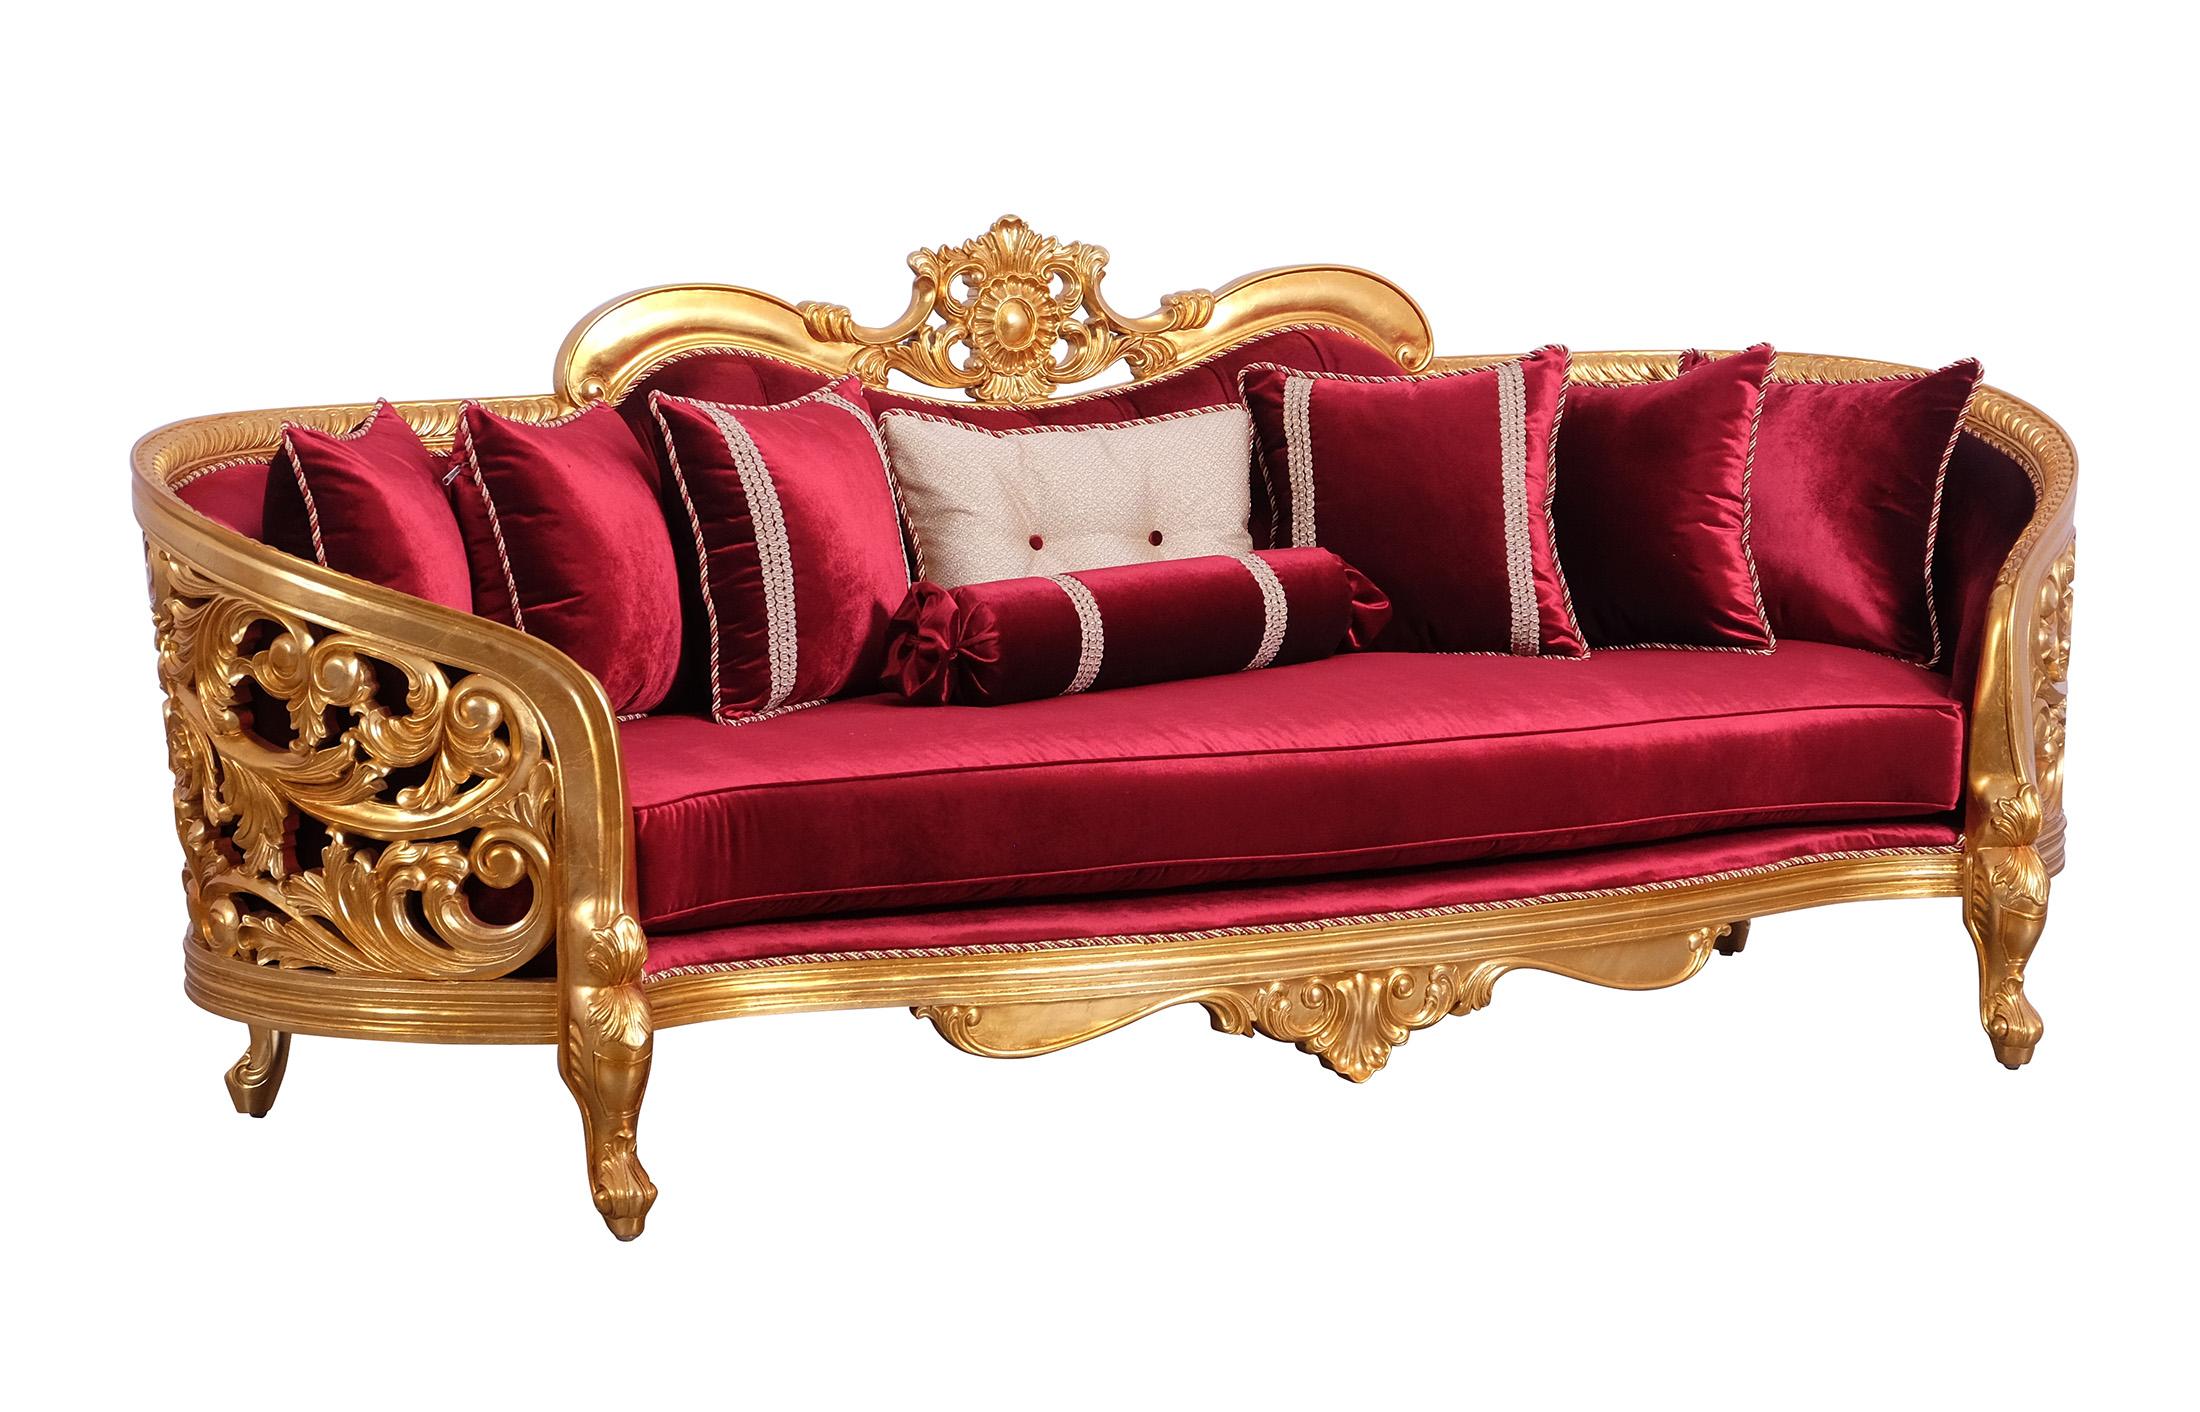 Classic, Traditional Sofa BELLAGIO II 30015-S in Antique, Gold, Burgundy Velvet